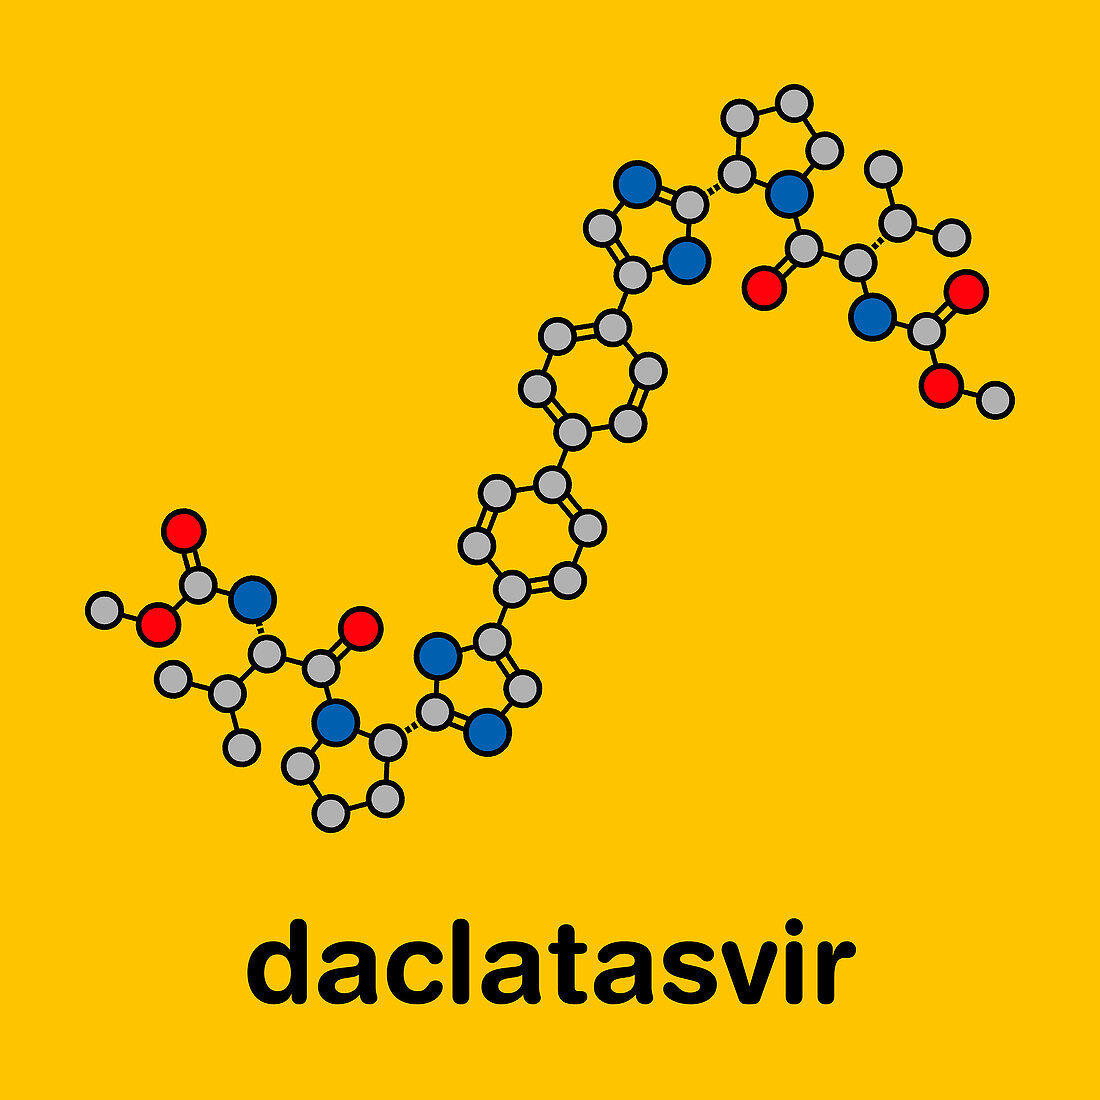 Daclatasvir hepatitis C virus drug, molecular model